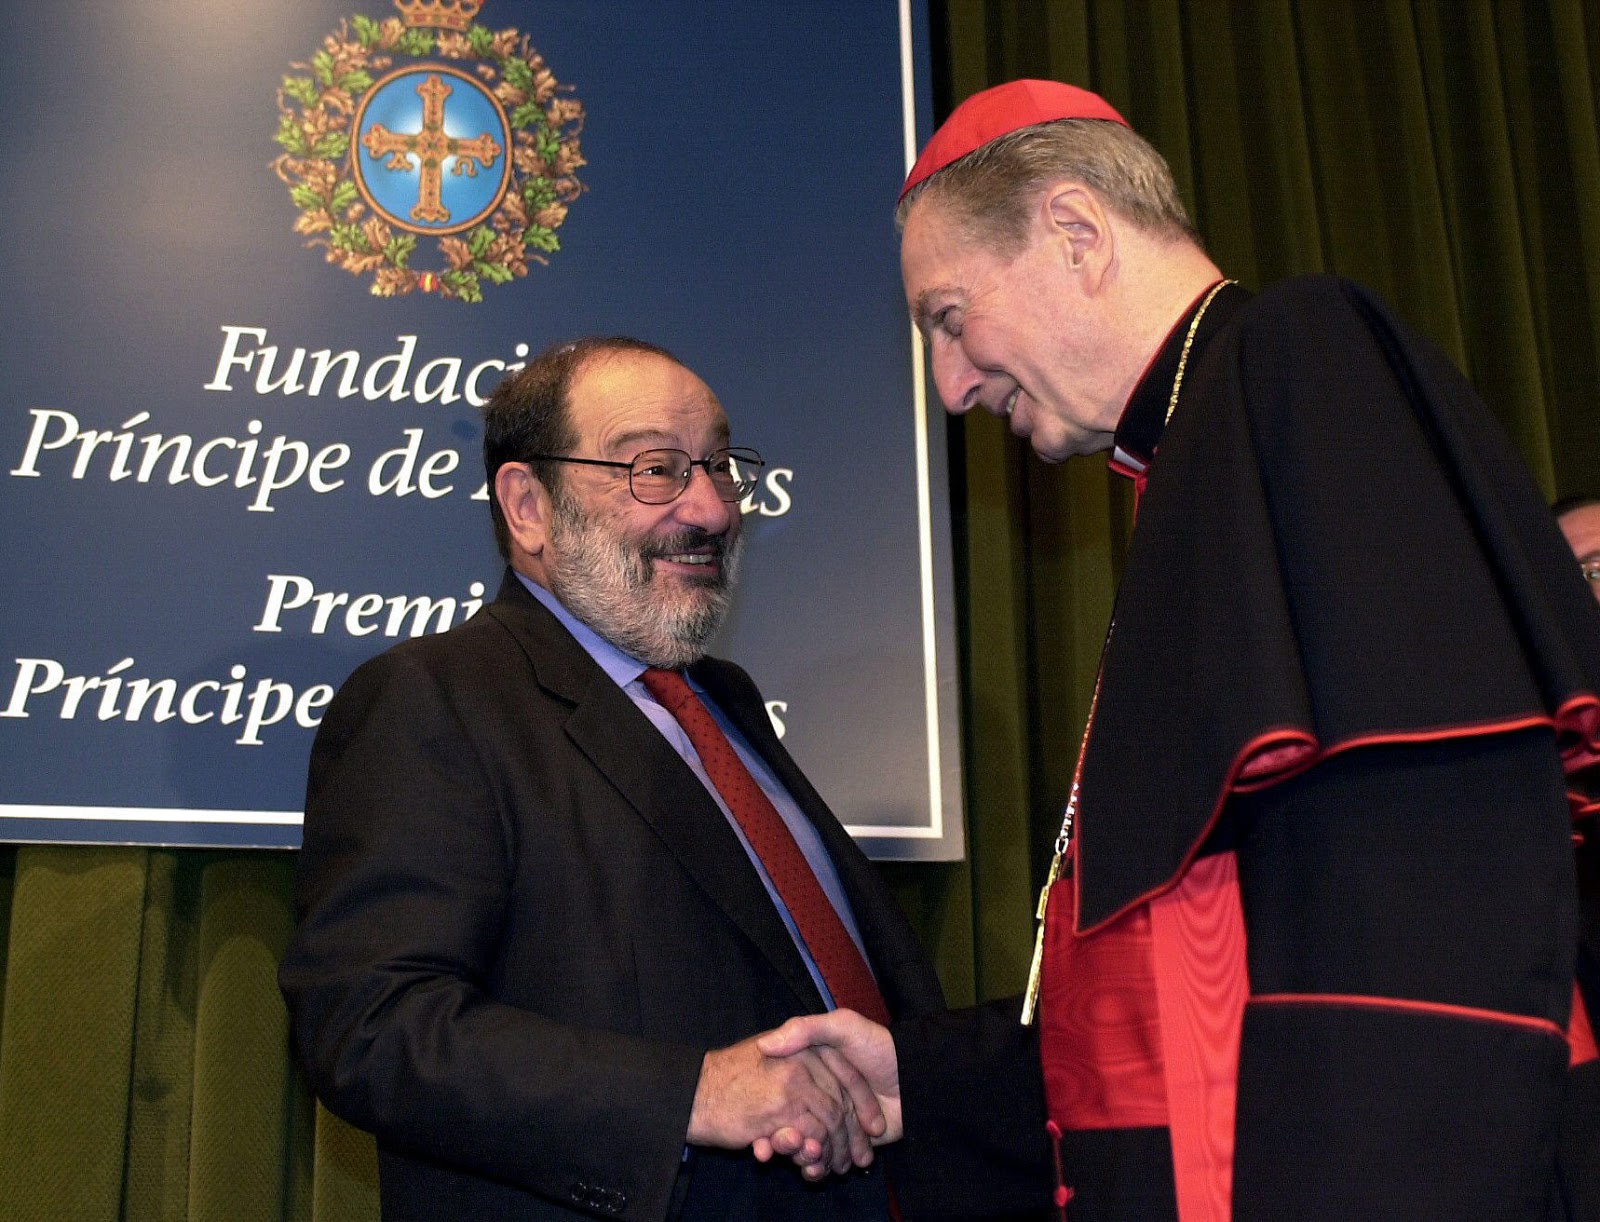 Умберто Эко и кардинал Карло Мария Мартини: Диалог о вере и неверии